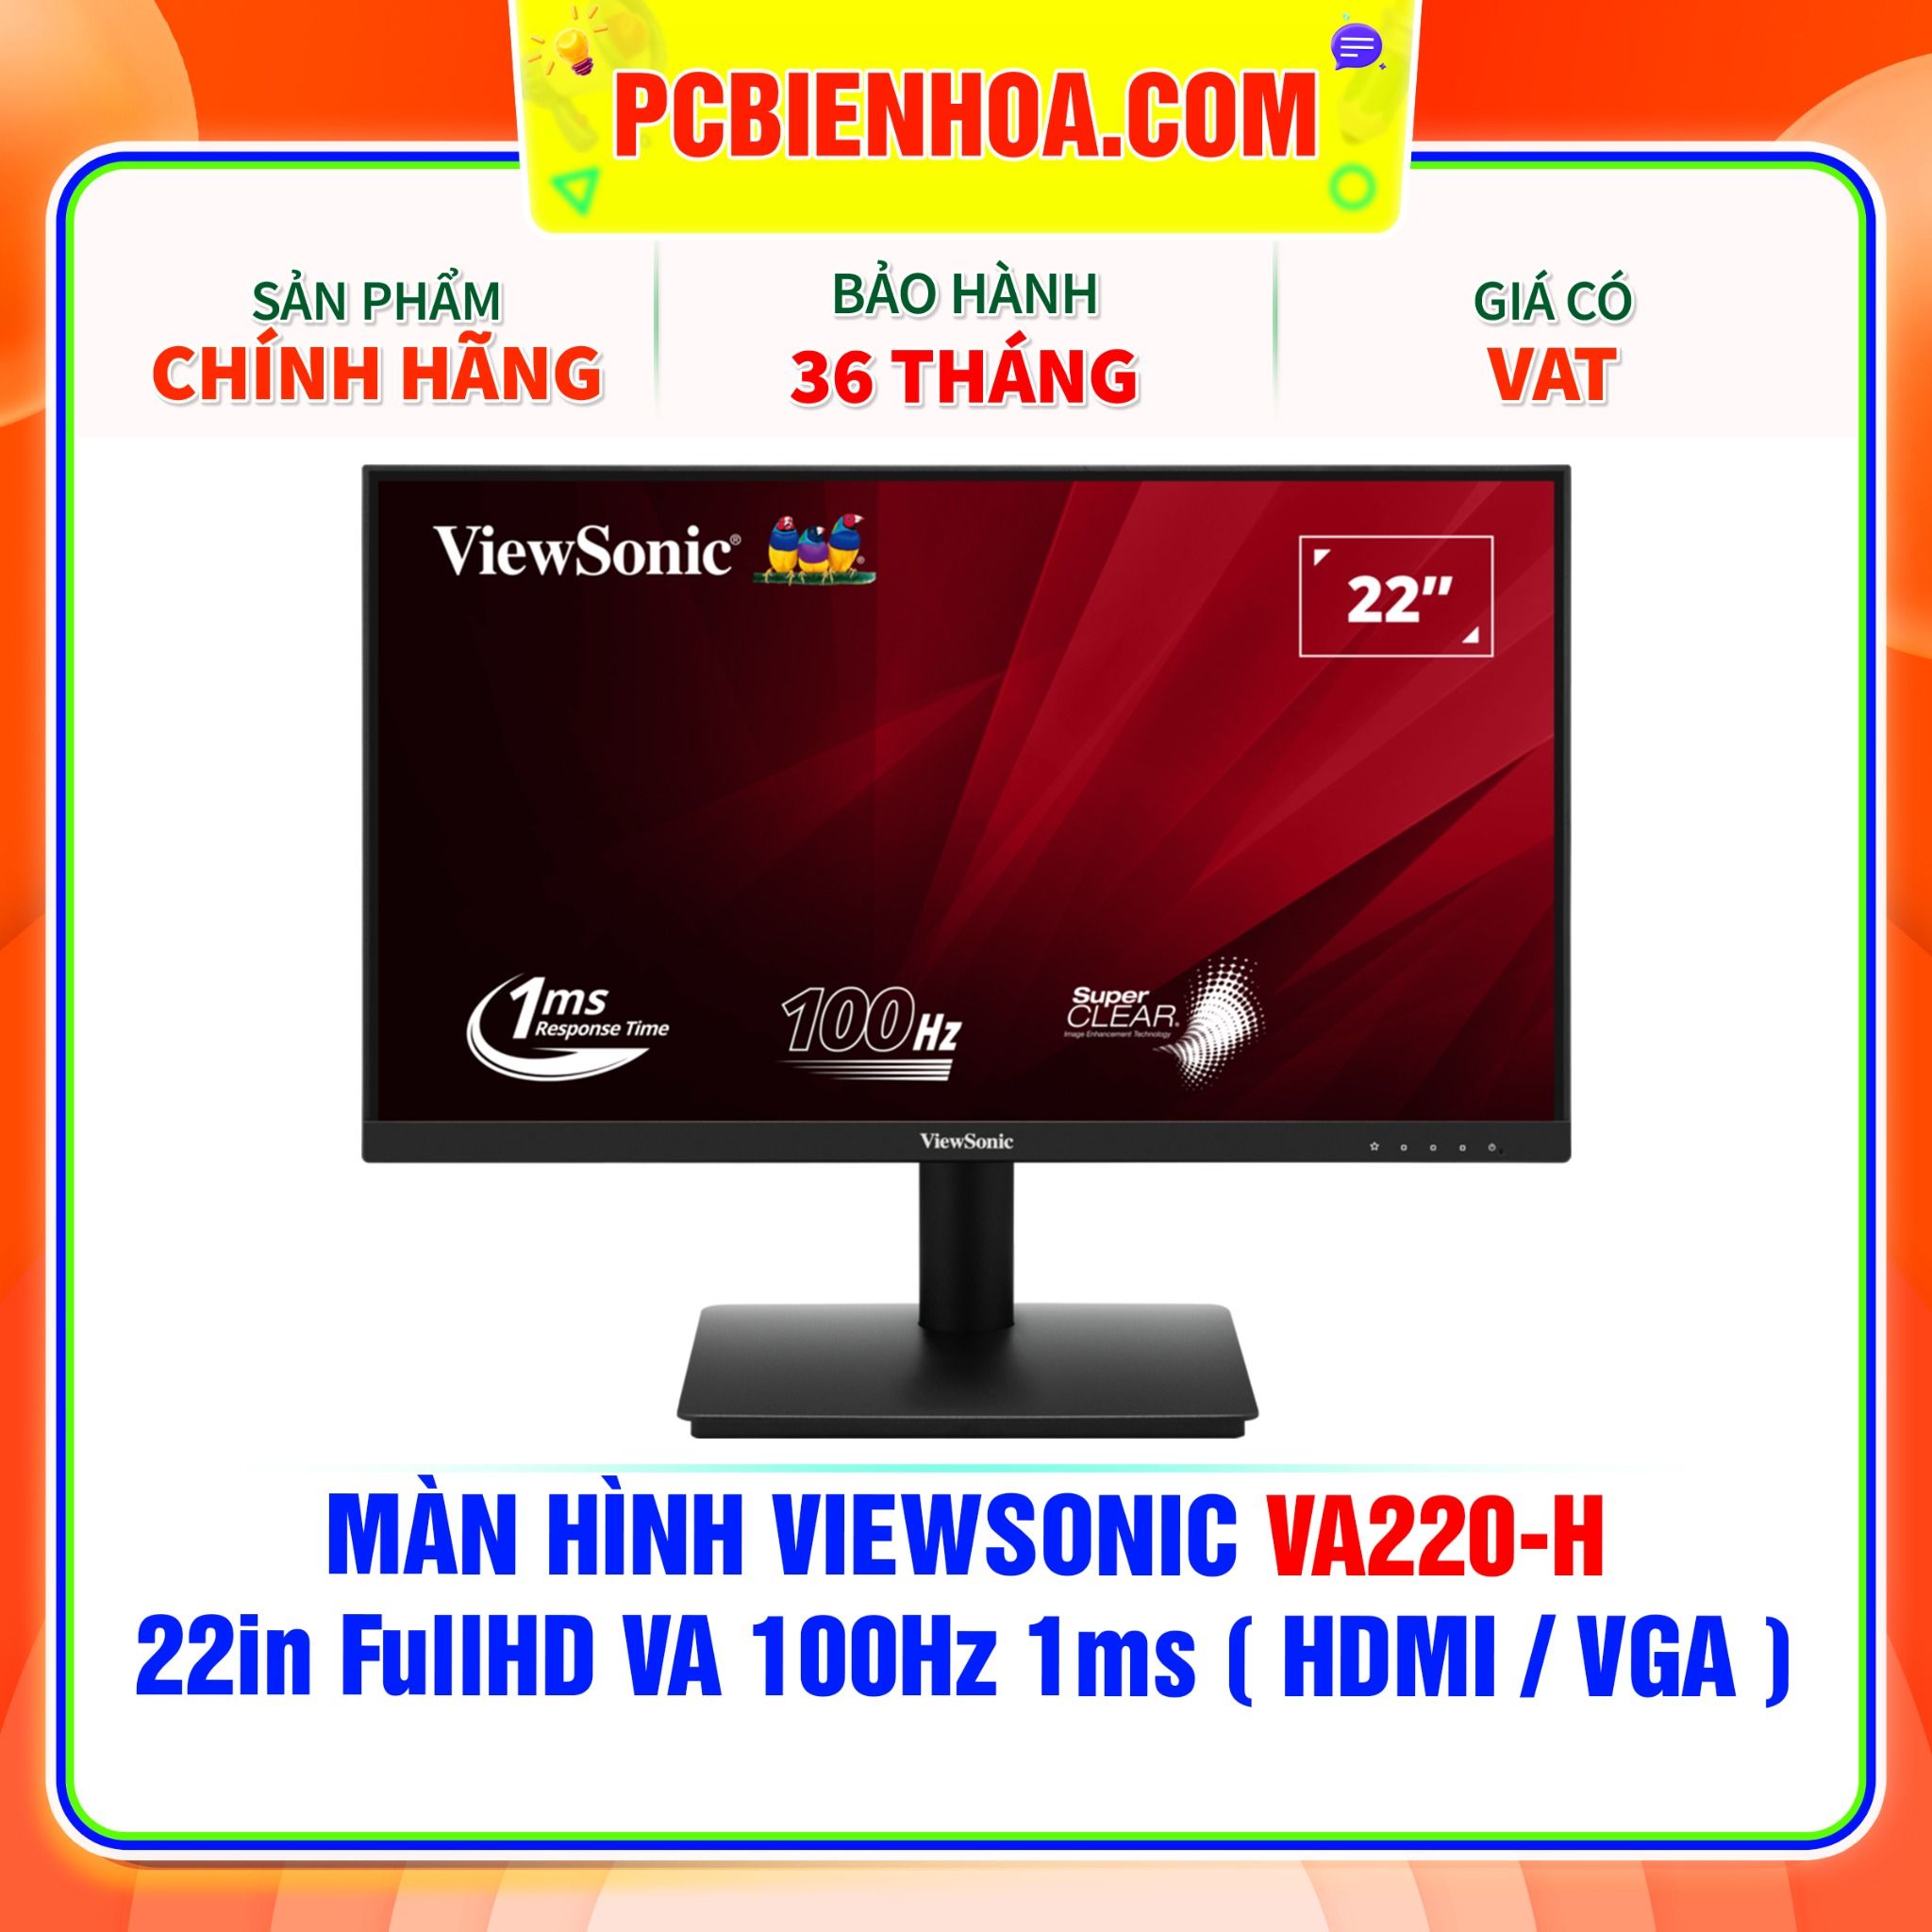  MÀN HÌNH VIEWSONIC VA220-H - 22in FullHD VA 100Hz 1ms ( HDMI / VGA ) 